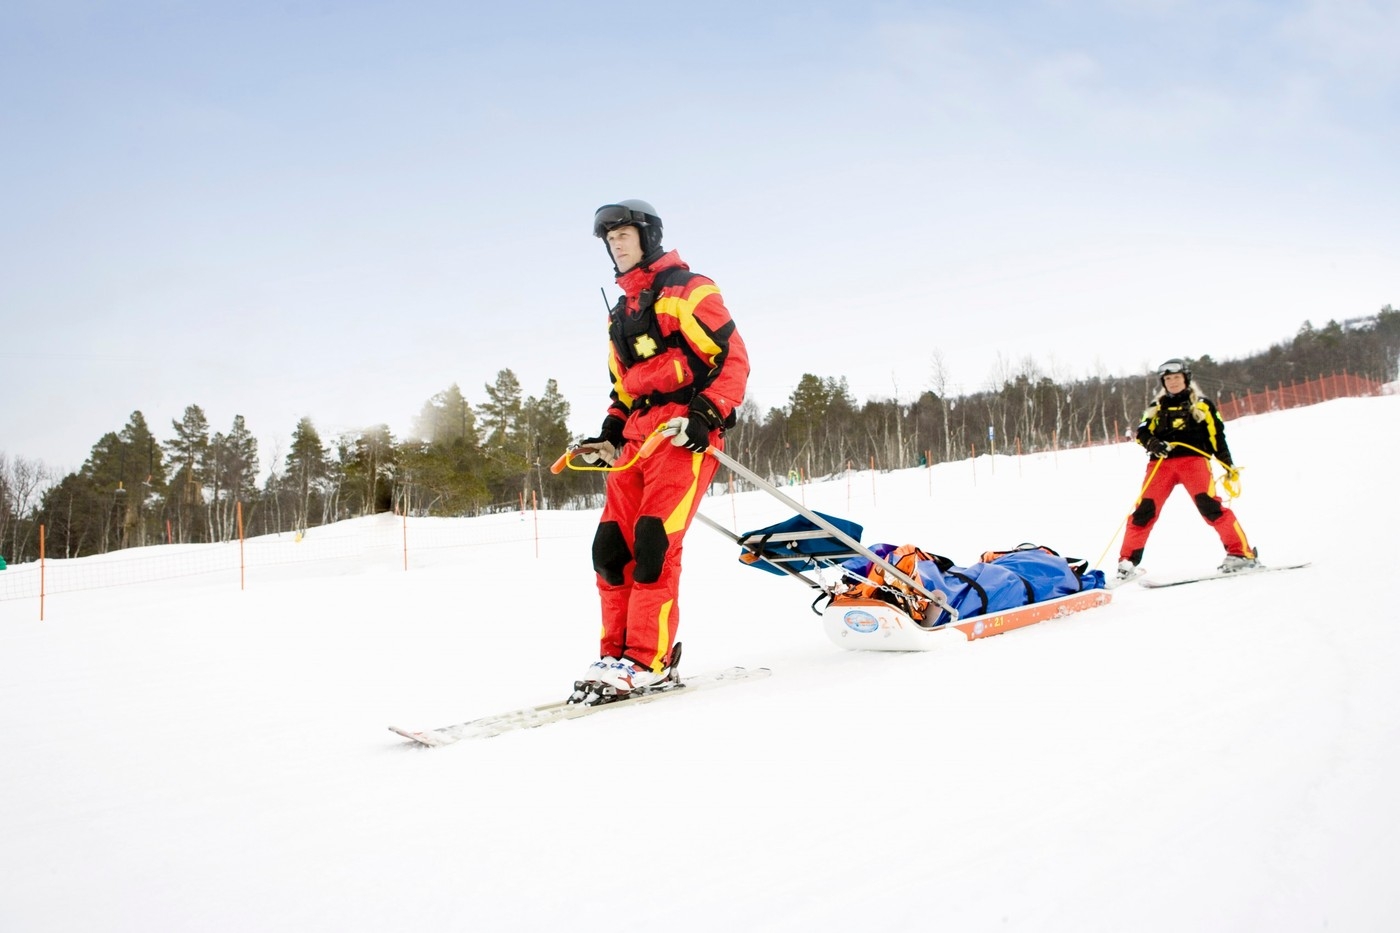 Nejhorší zranění vznikají při srážkách lyžařů. Jak poskytnout první pomoc?